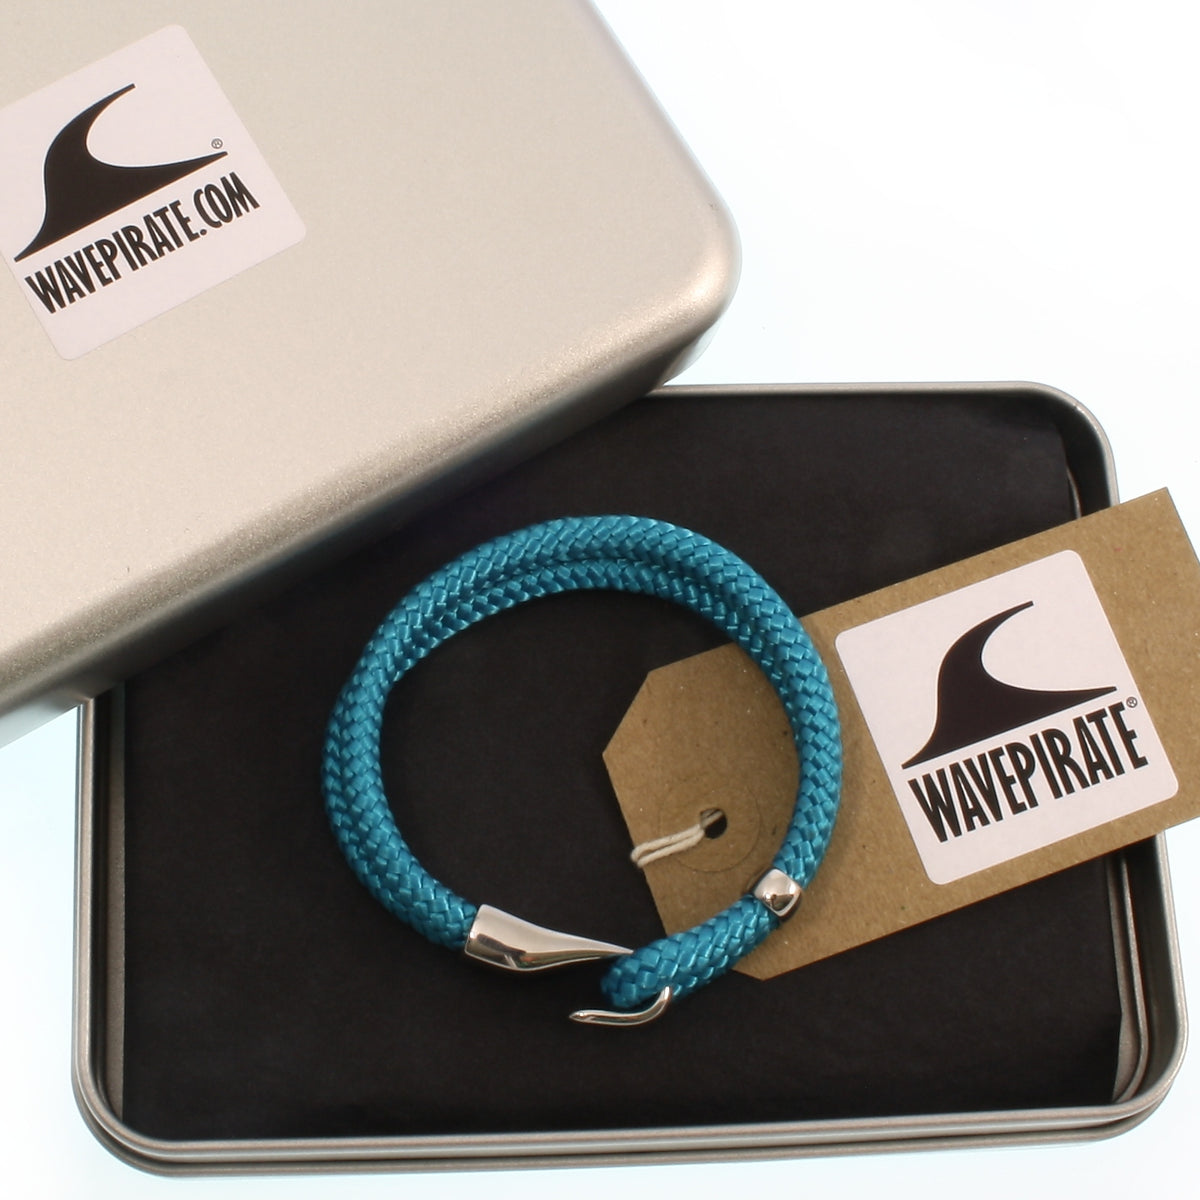 Herren-Segeltau-Armband-Peak-blau-geflochten-Edelstahlverschluss-geschenkverpackung-wavepirate-shop-st